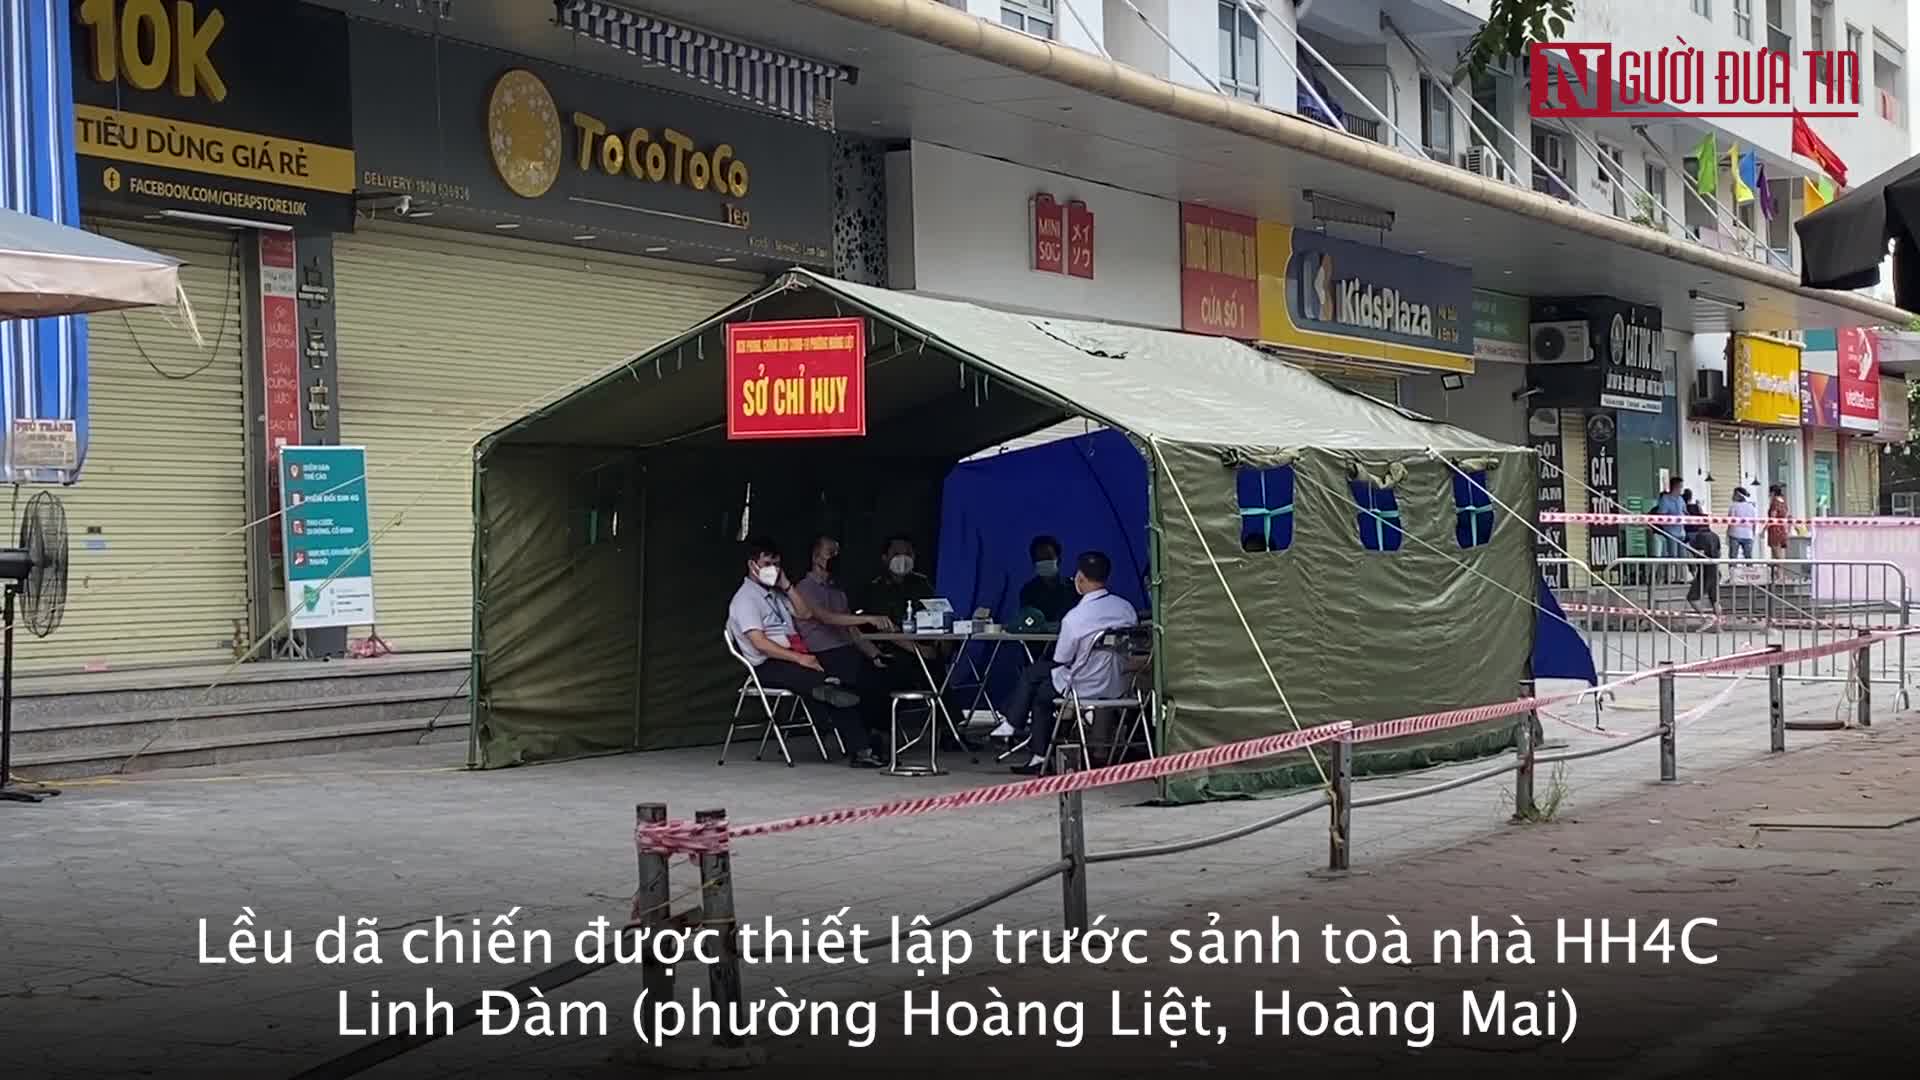 Sự kiện - Gần hai trăm nhân viên y tế hỗ trợ lấy mẫu xét nghiệm cư dân HH4C Linh Đàm